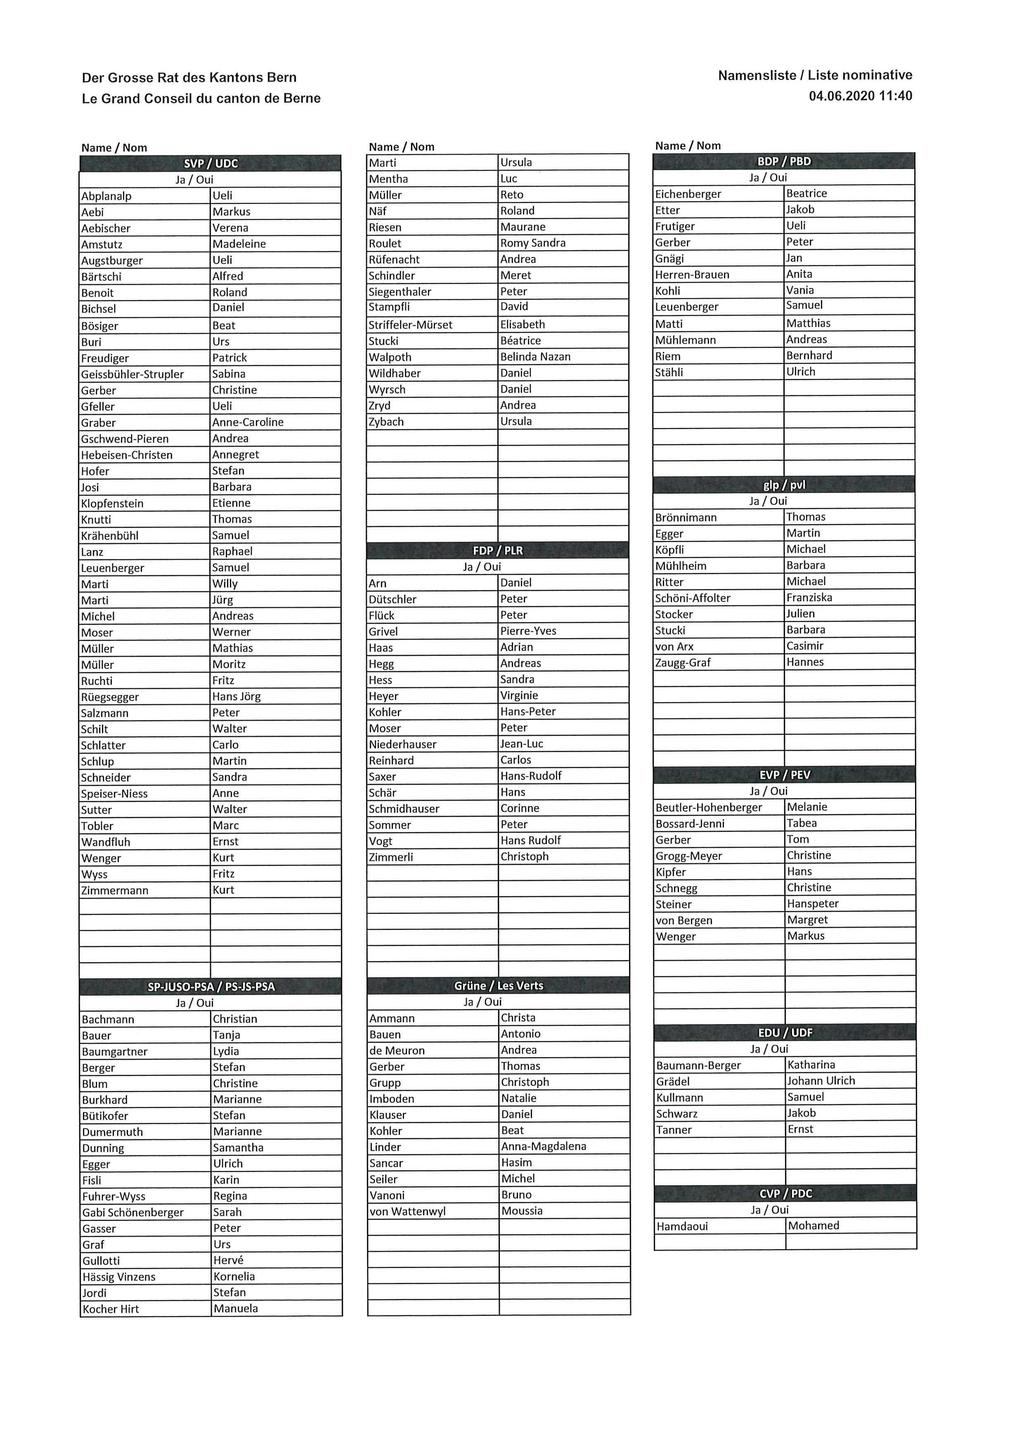 Der Grosse Rat des Kantons Bern Namensliste / Liste nominative Le Grand Conseil du canton de Berne 04.06.